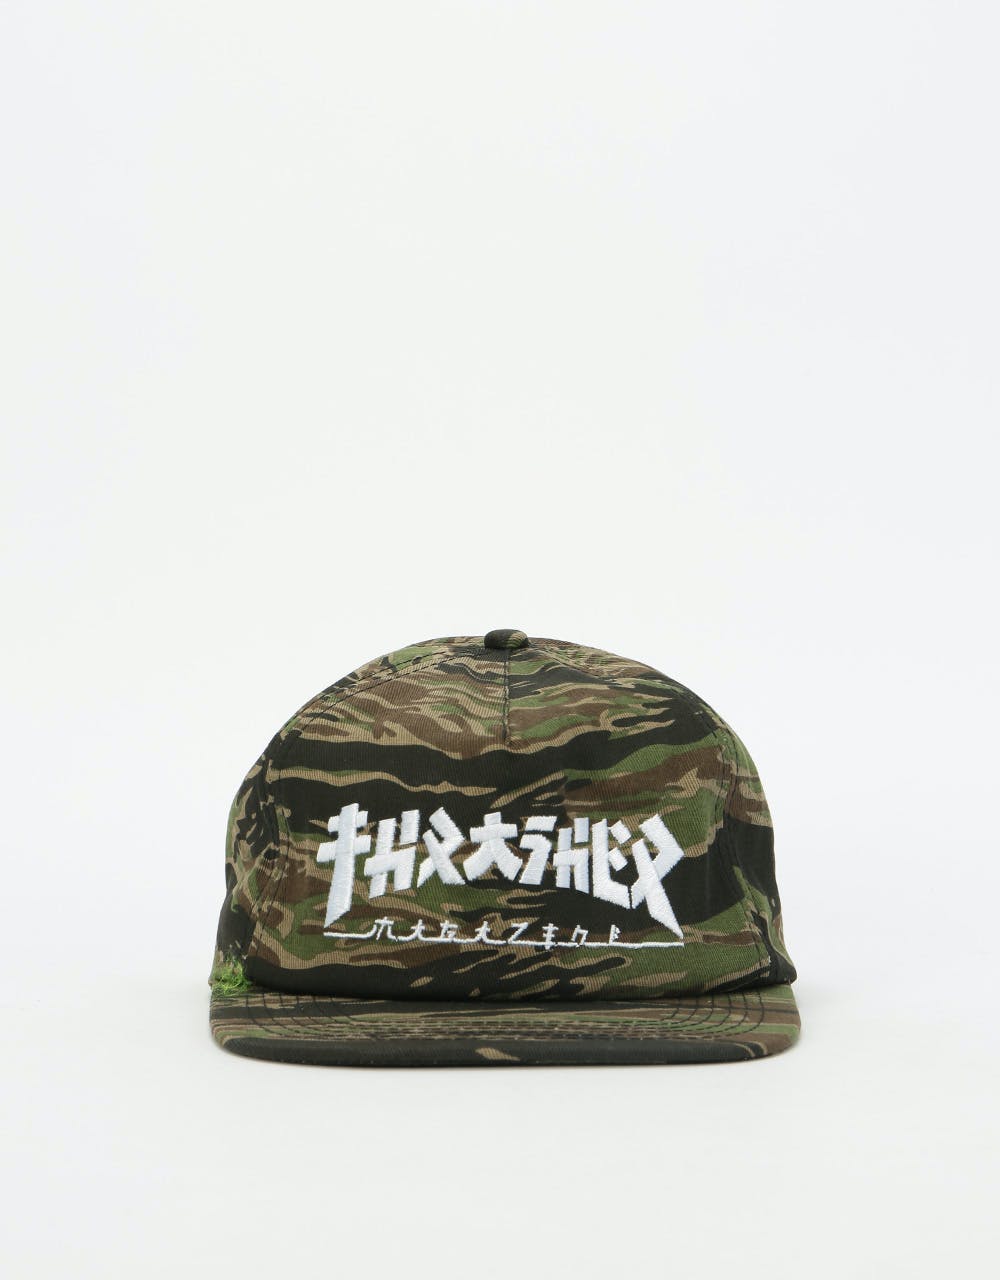 Thrasher Godzilla Snapback Cap - Tiger Camo